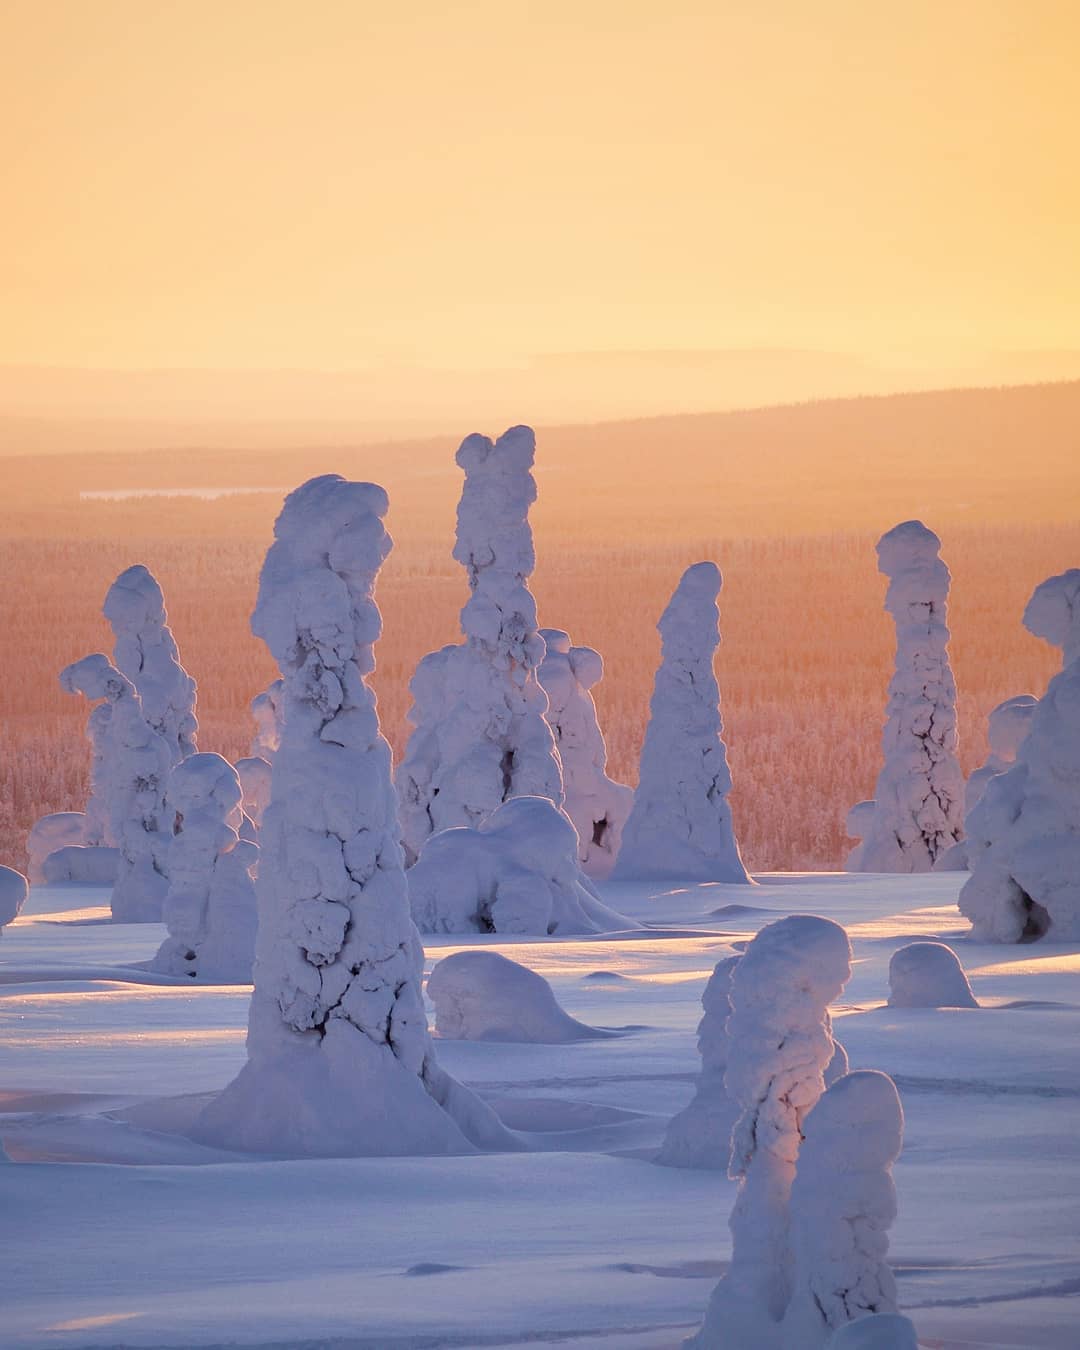 Непостижимая красота Исландии и Финляндии на волшебных снимках Эсси Траутвейн Исландия,север,Финляндия